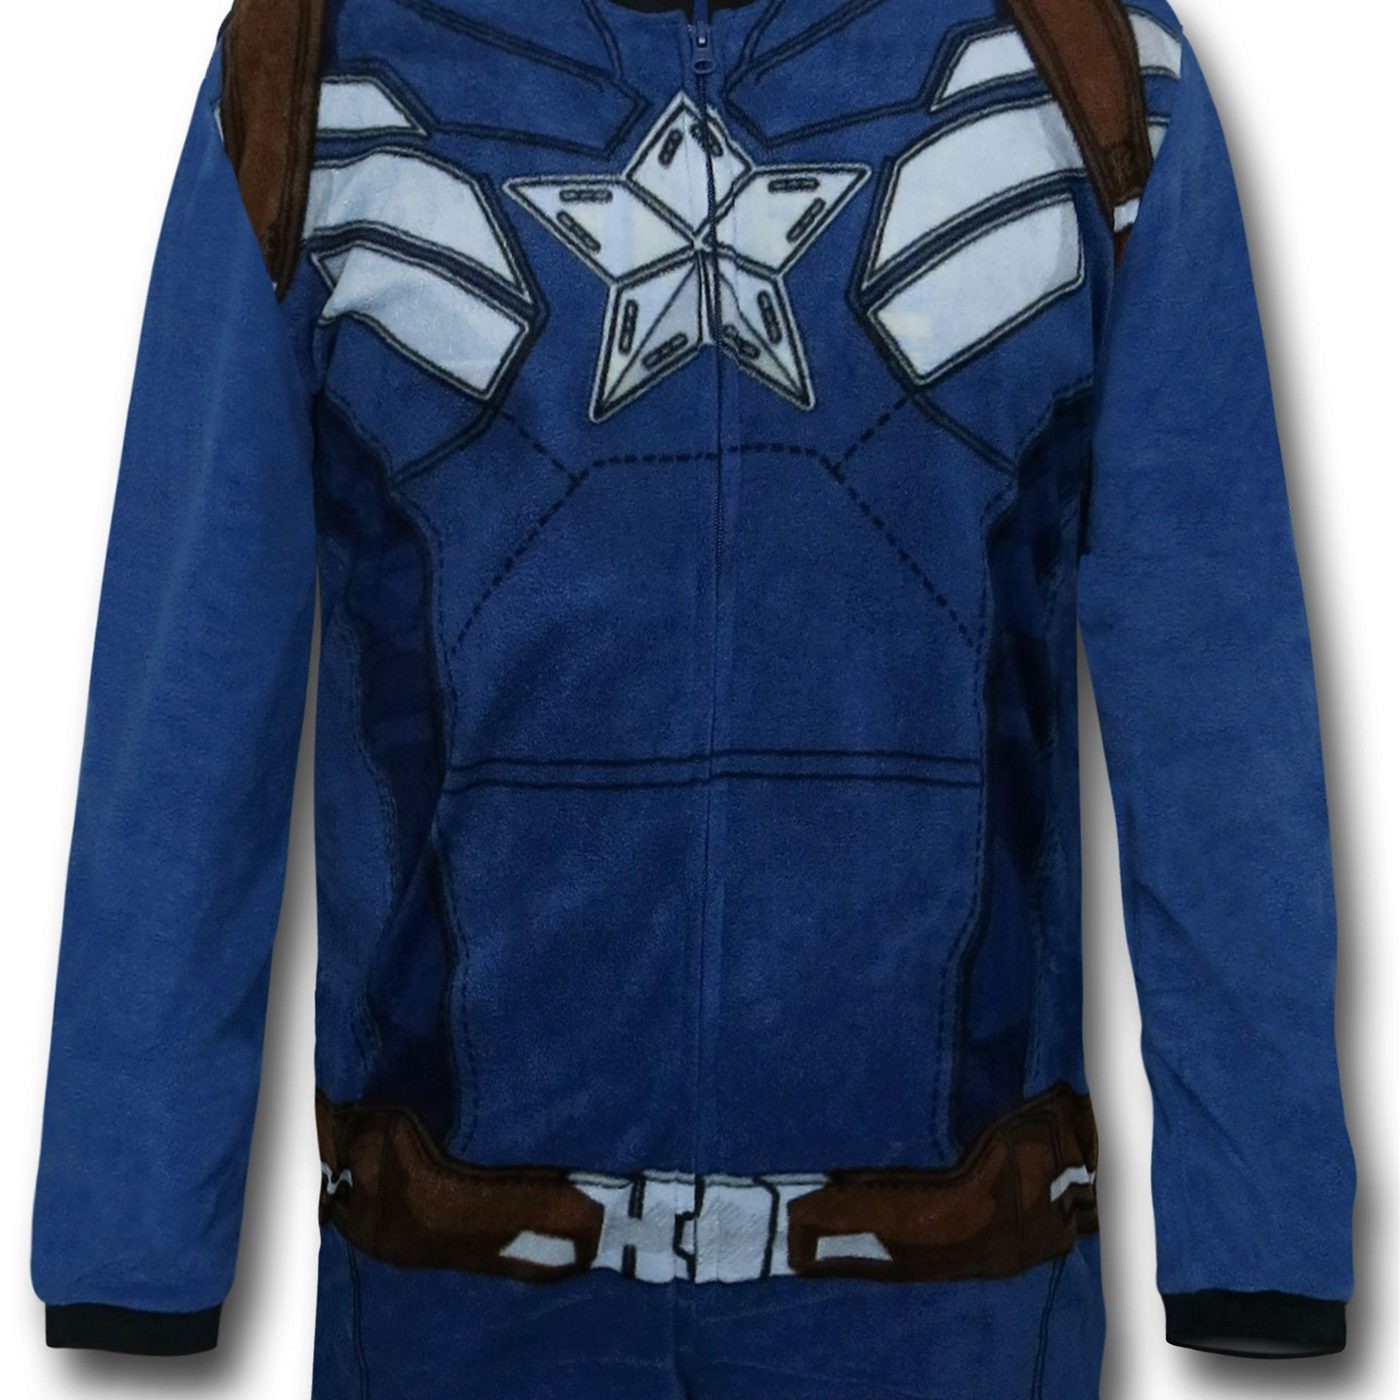 Captain America Steve Rogers Union Suit